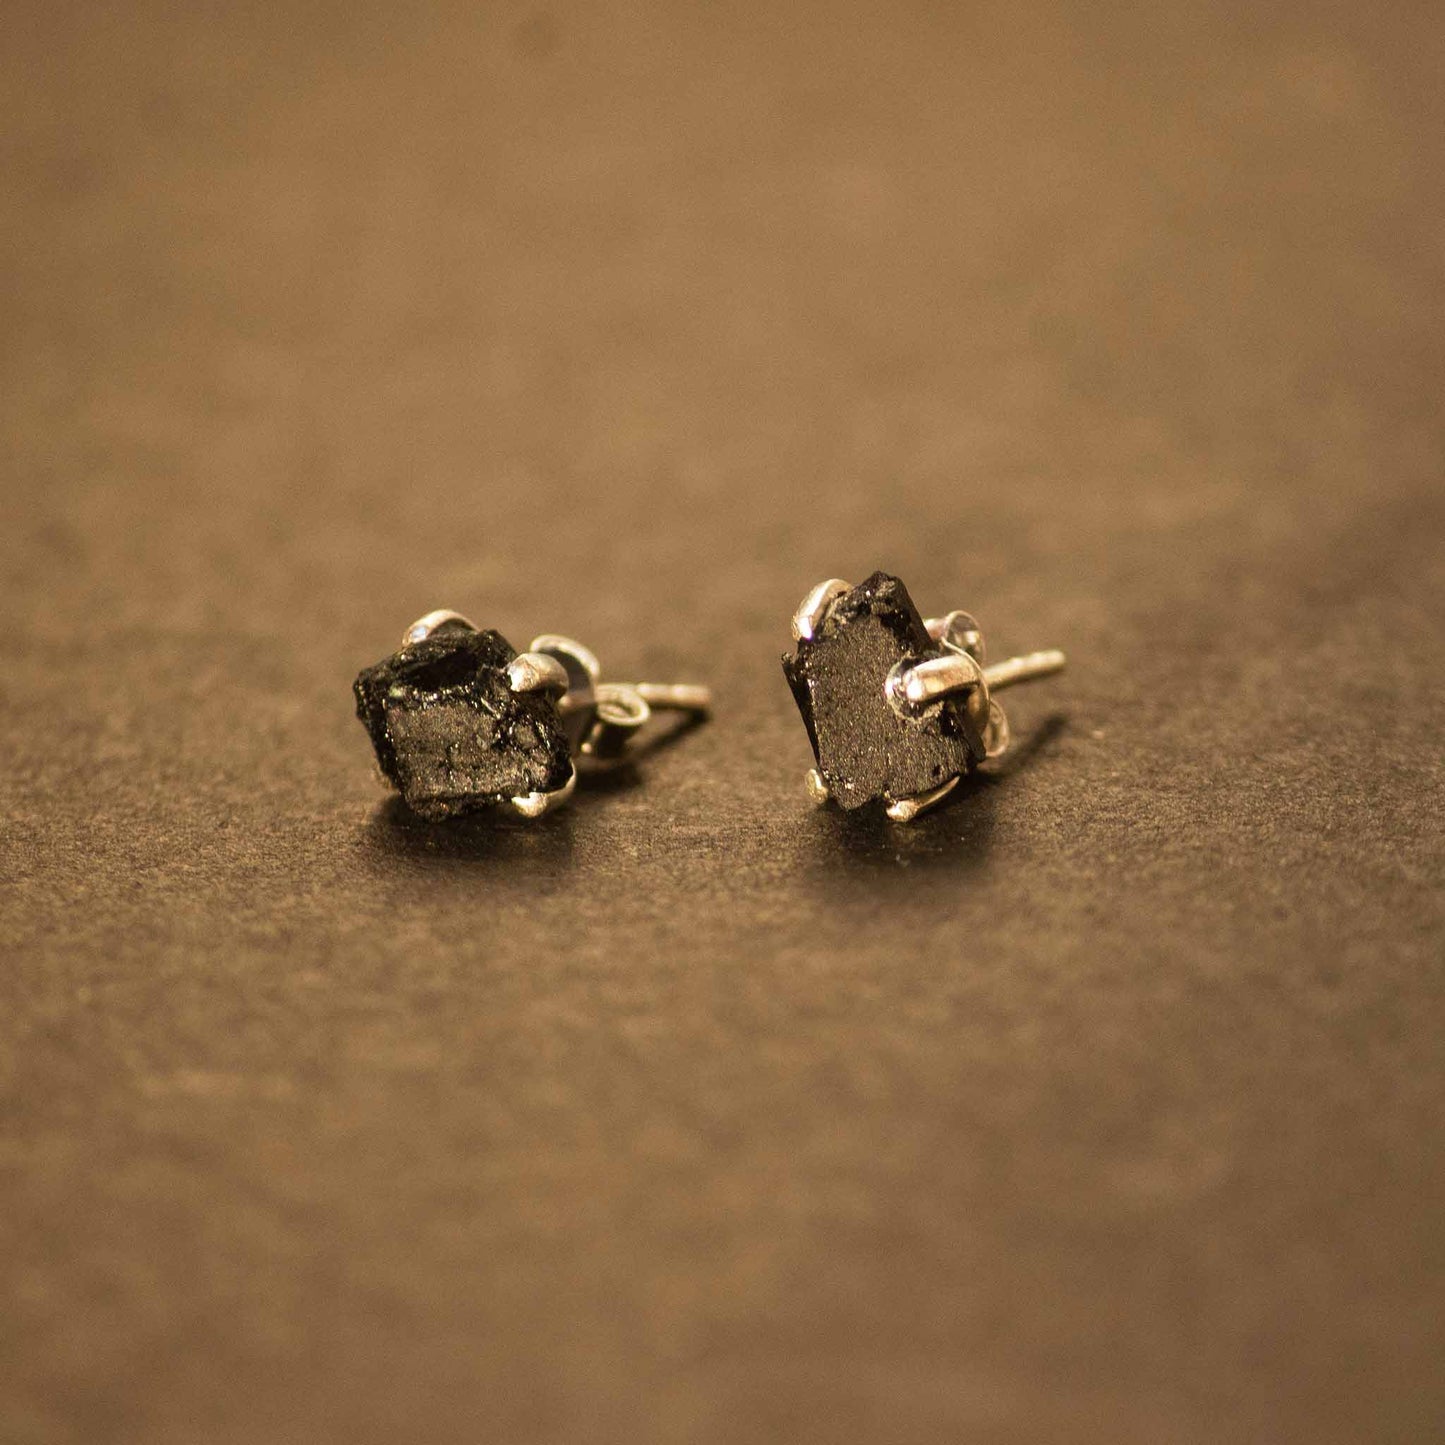 Raw Black Tourmaline Sterling Silver Earrings